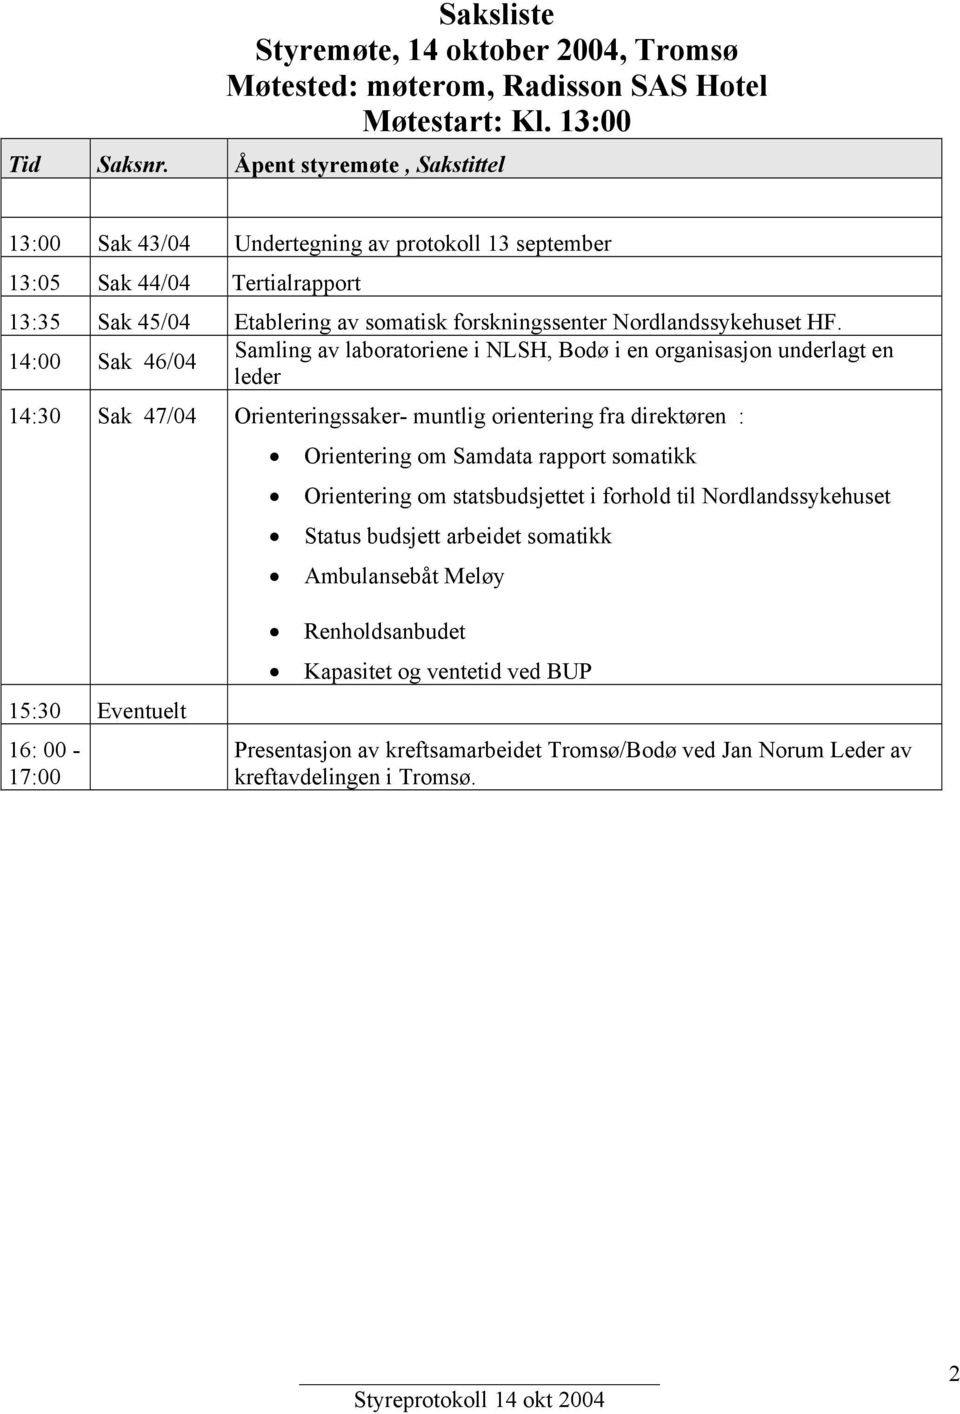 14:00 Sak 46/04 Samling av laboratoriene i NLSH, Bodø i en organisasjon underlagt en leder 14:30 Sak 47/04 Orienteringssaker- muntlig orientering fra direktøren : Orientering om Samdata rapport